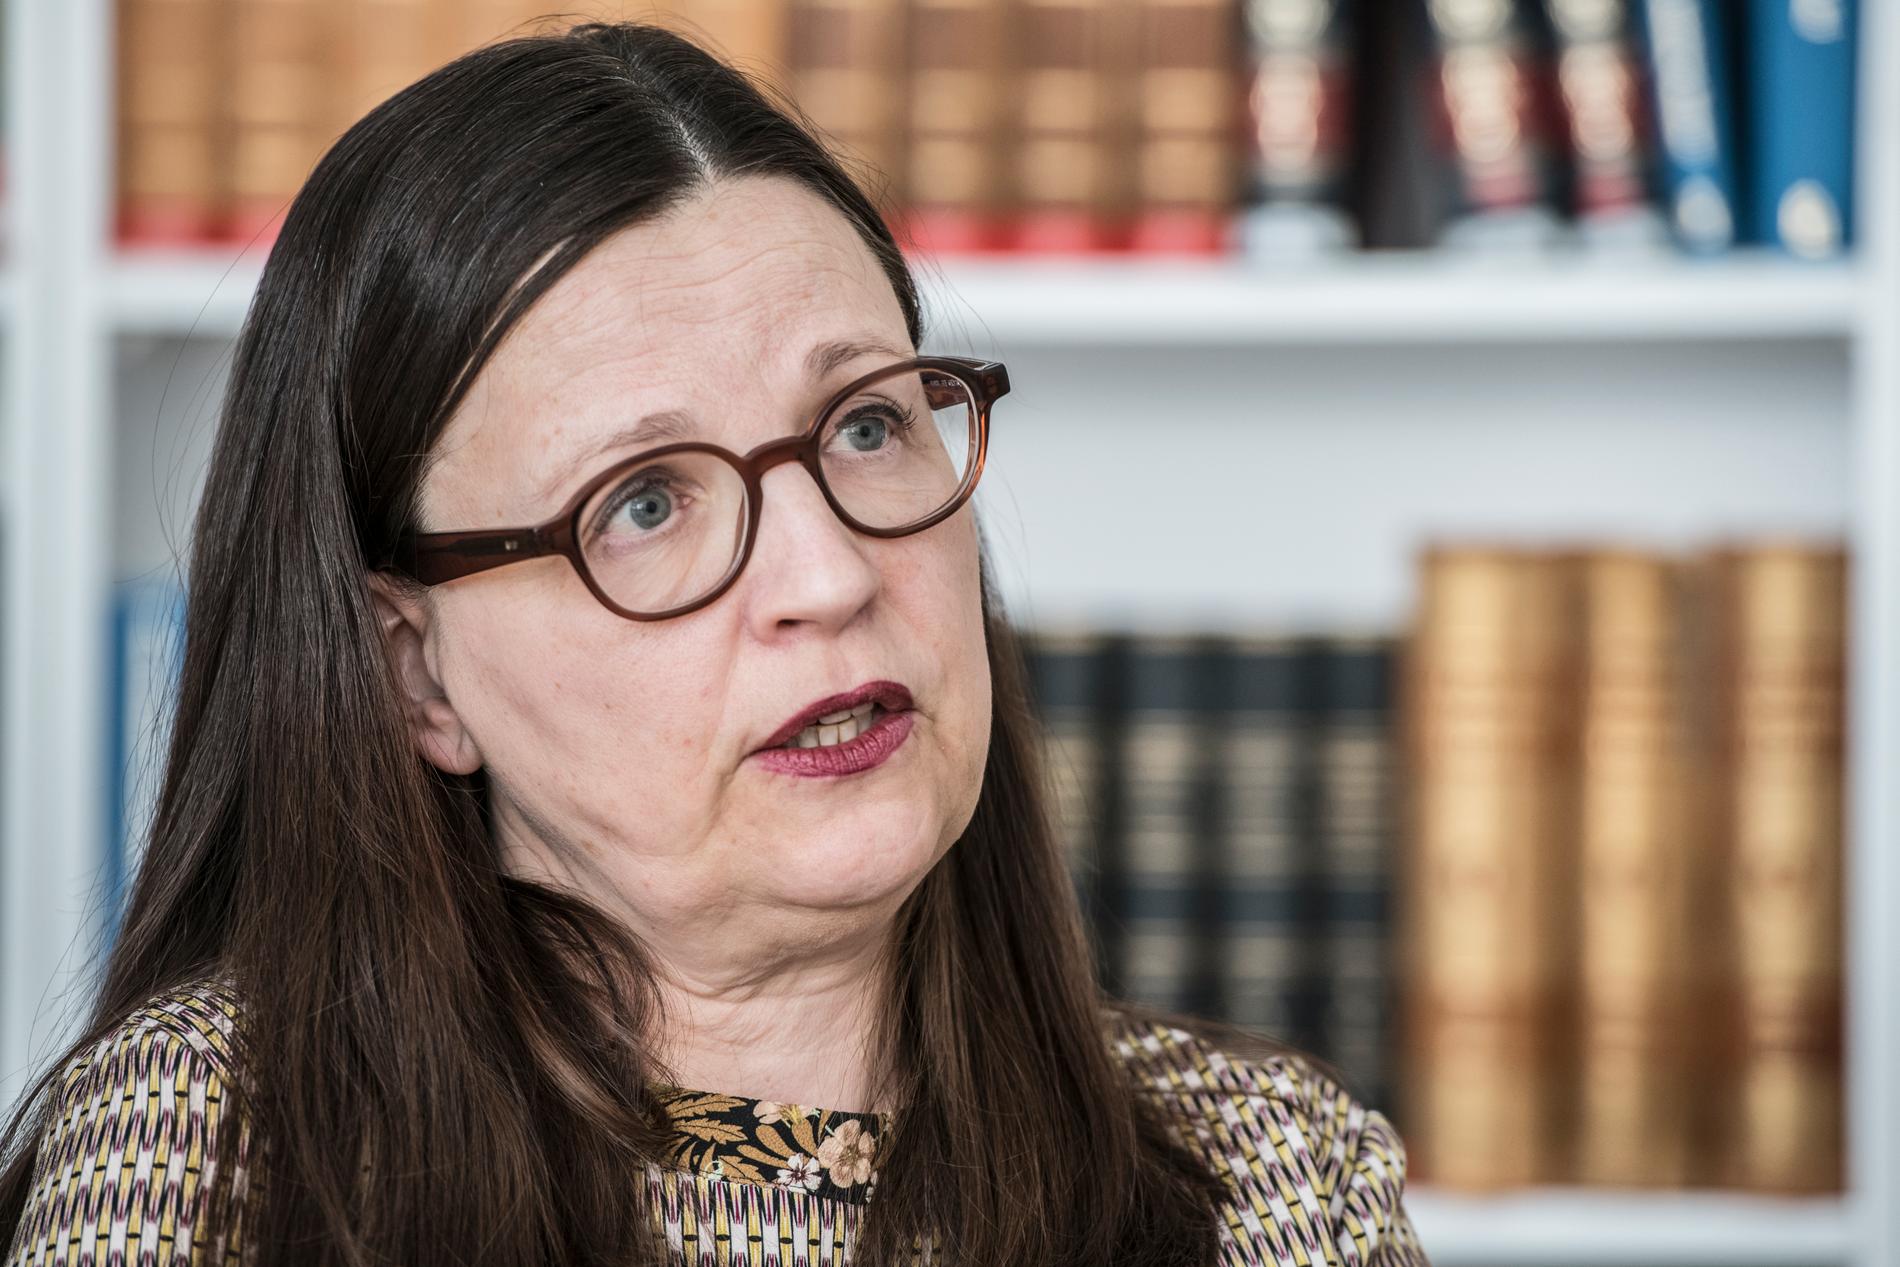 Utbildningsminister Anna Ekström (S) inleder en översyn av Barn- och elevombudet efter kritik. Arkivbild.